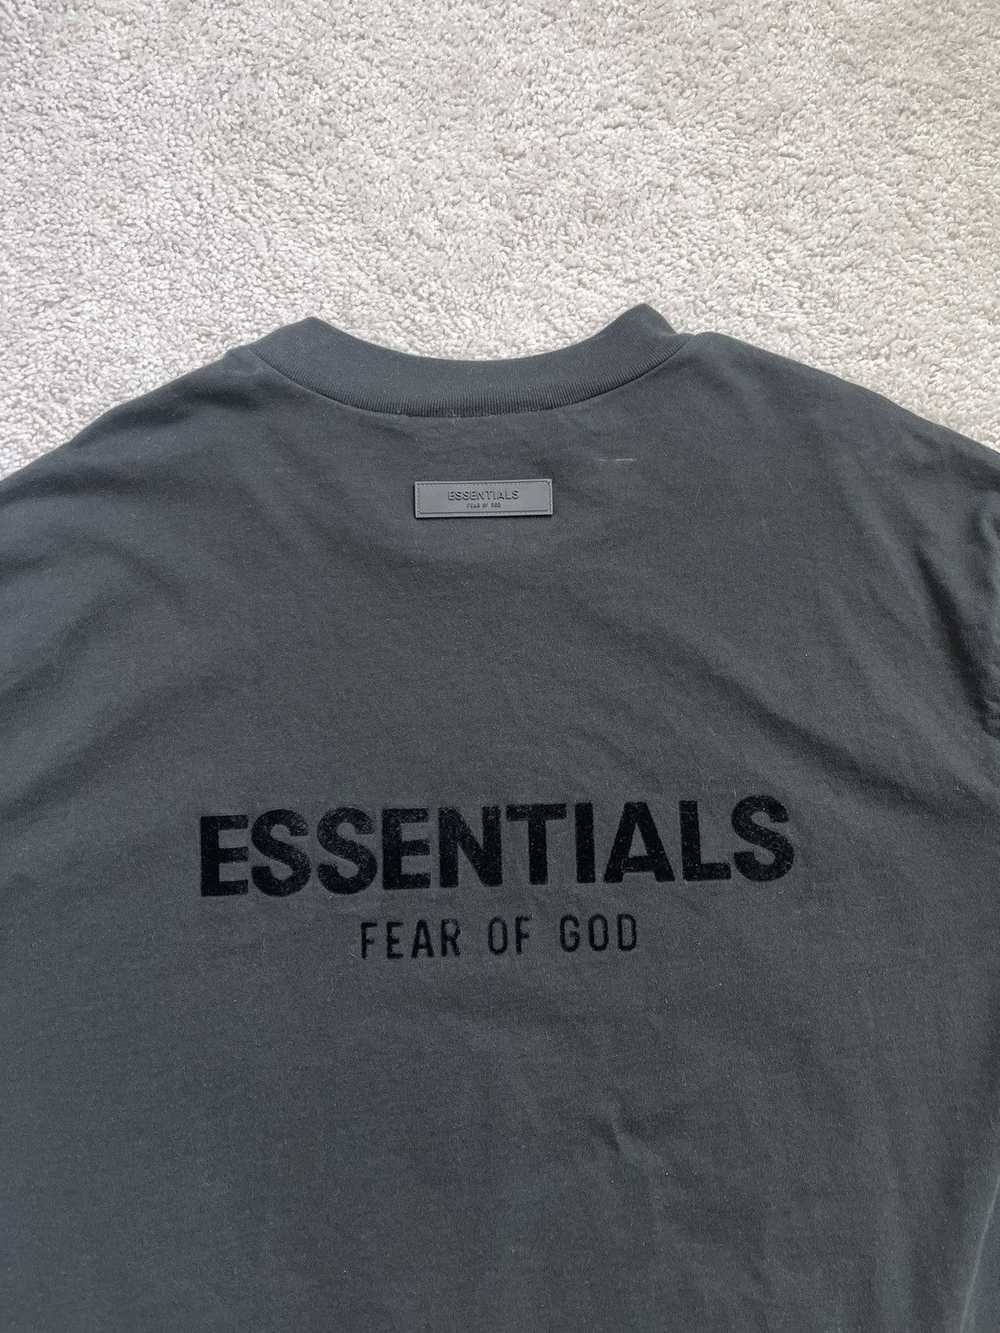 Essentials Essentials Tshirt Size L - image 2